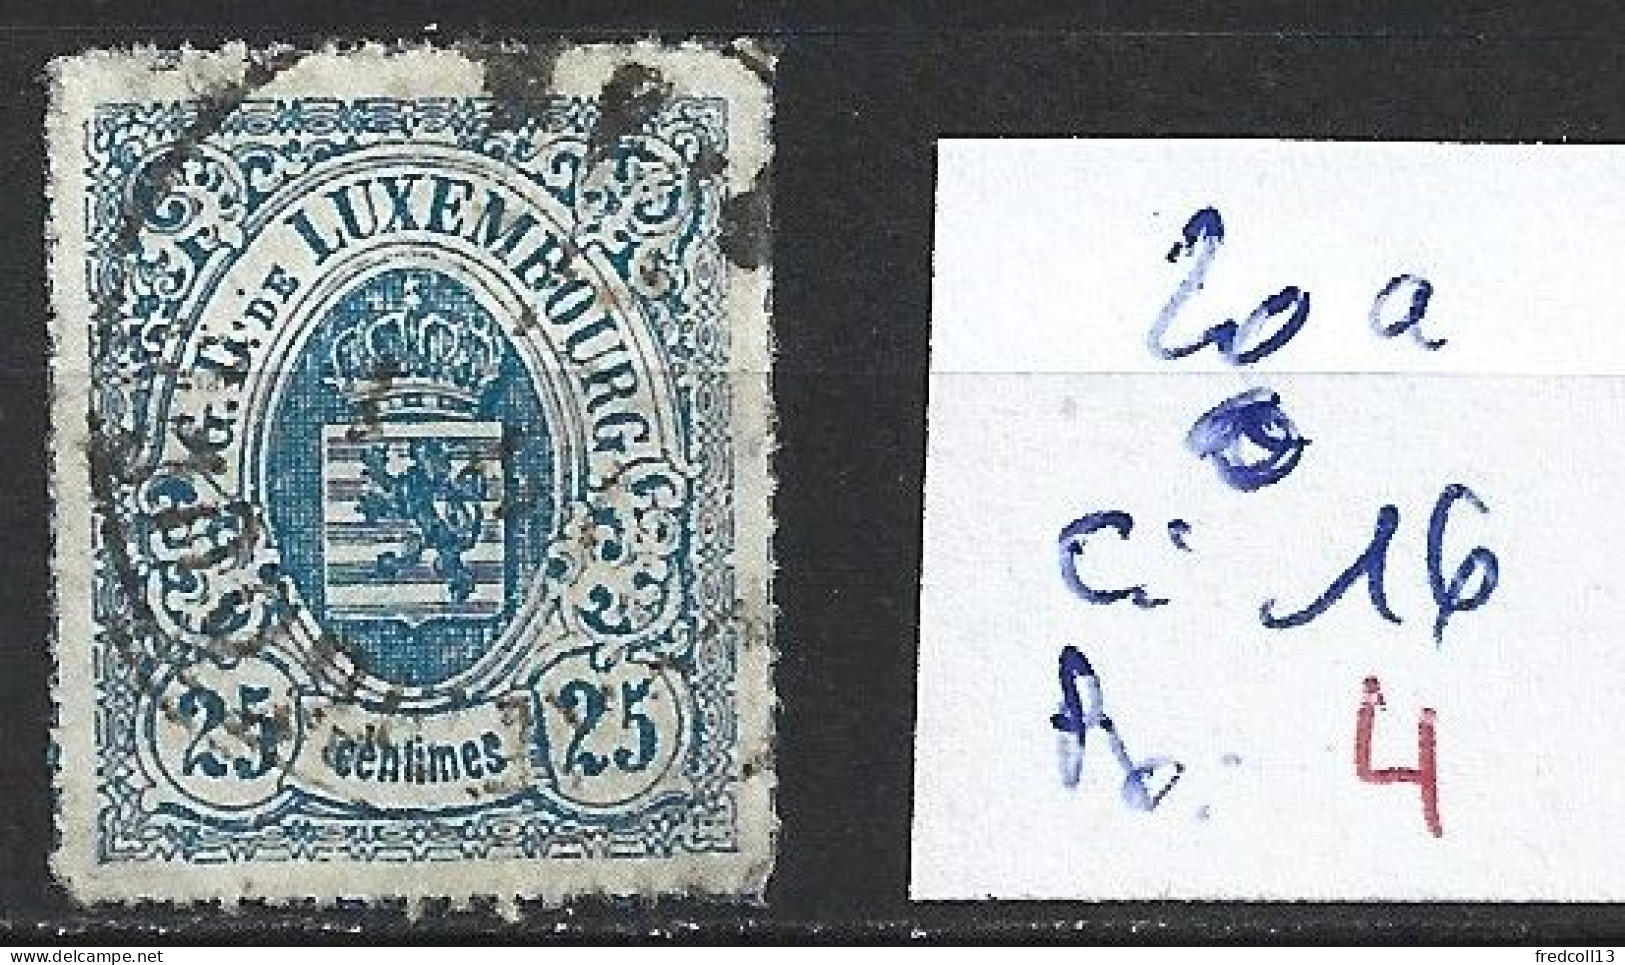 LUXEMBOURG 20a Oblitéré Côte 16 € - 1859-1880 Wappen & Heraldik